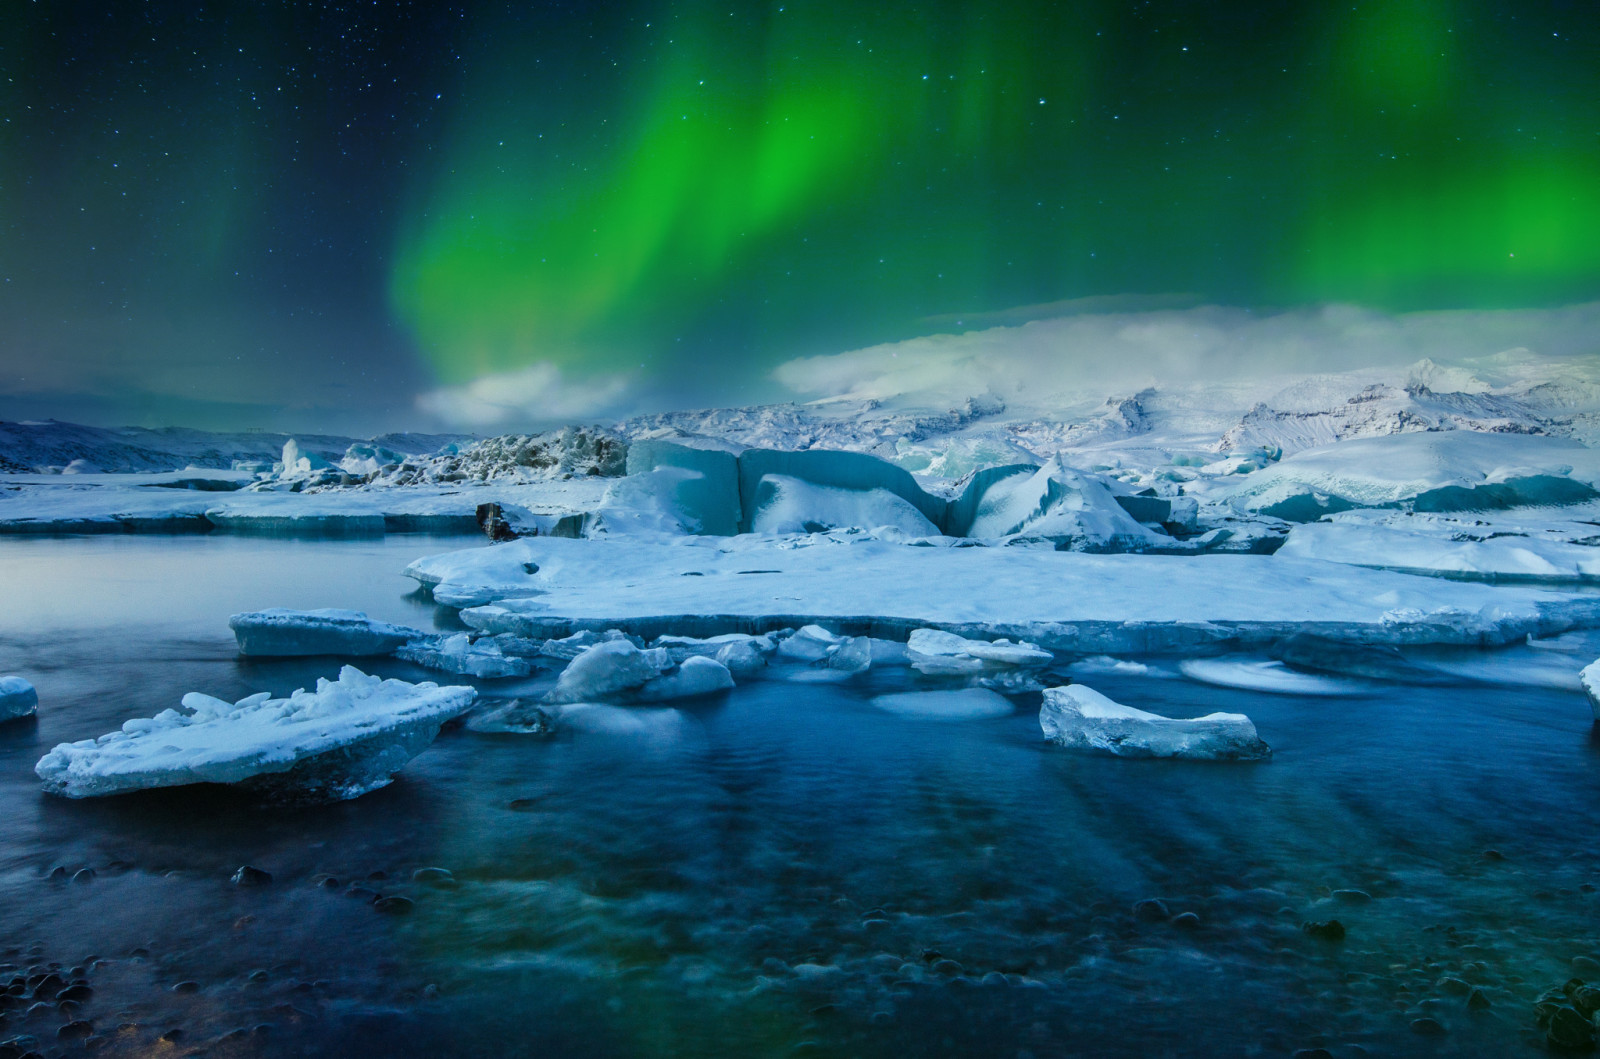 หิมะ, ทะเลสาป, น้ำแข็ง, ฤดูหนาว, ไฟ, ออโรร่า, ดาว, ประเทศไอซ์แลนด์